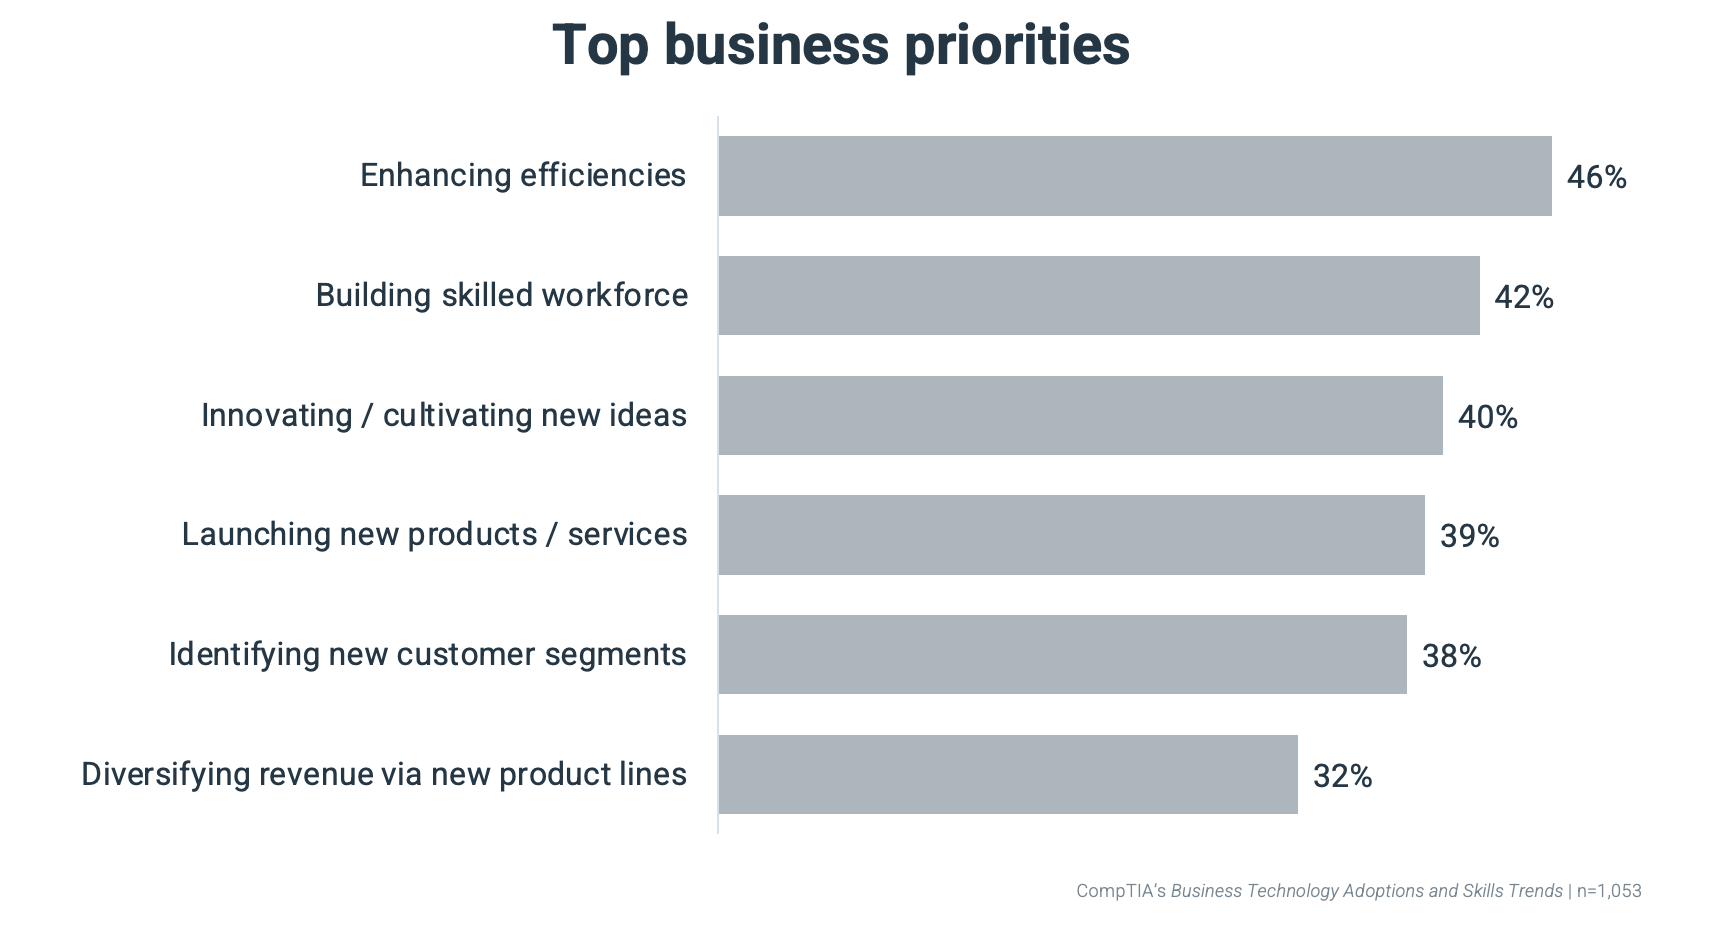 Top business priorities